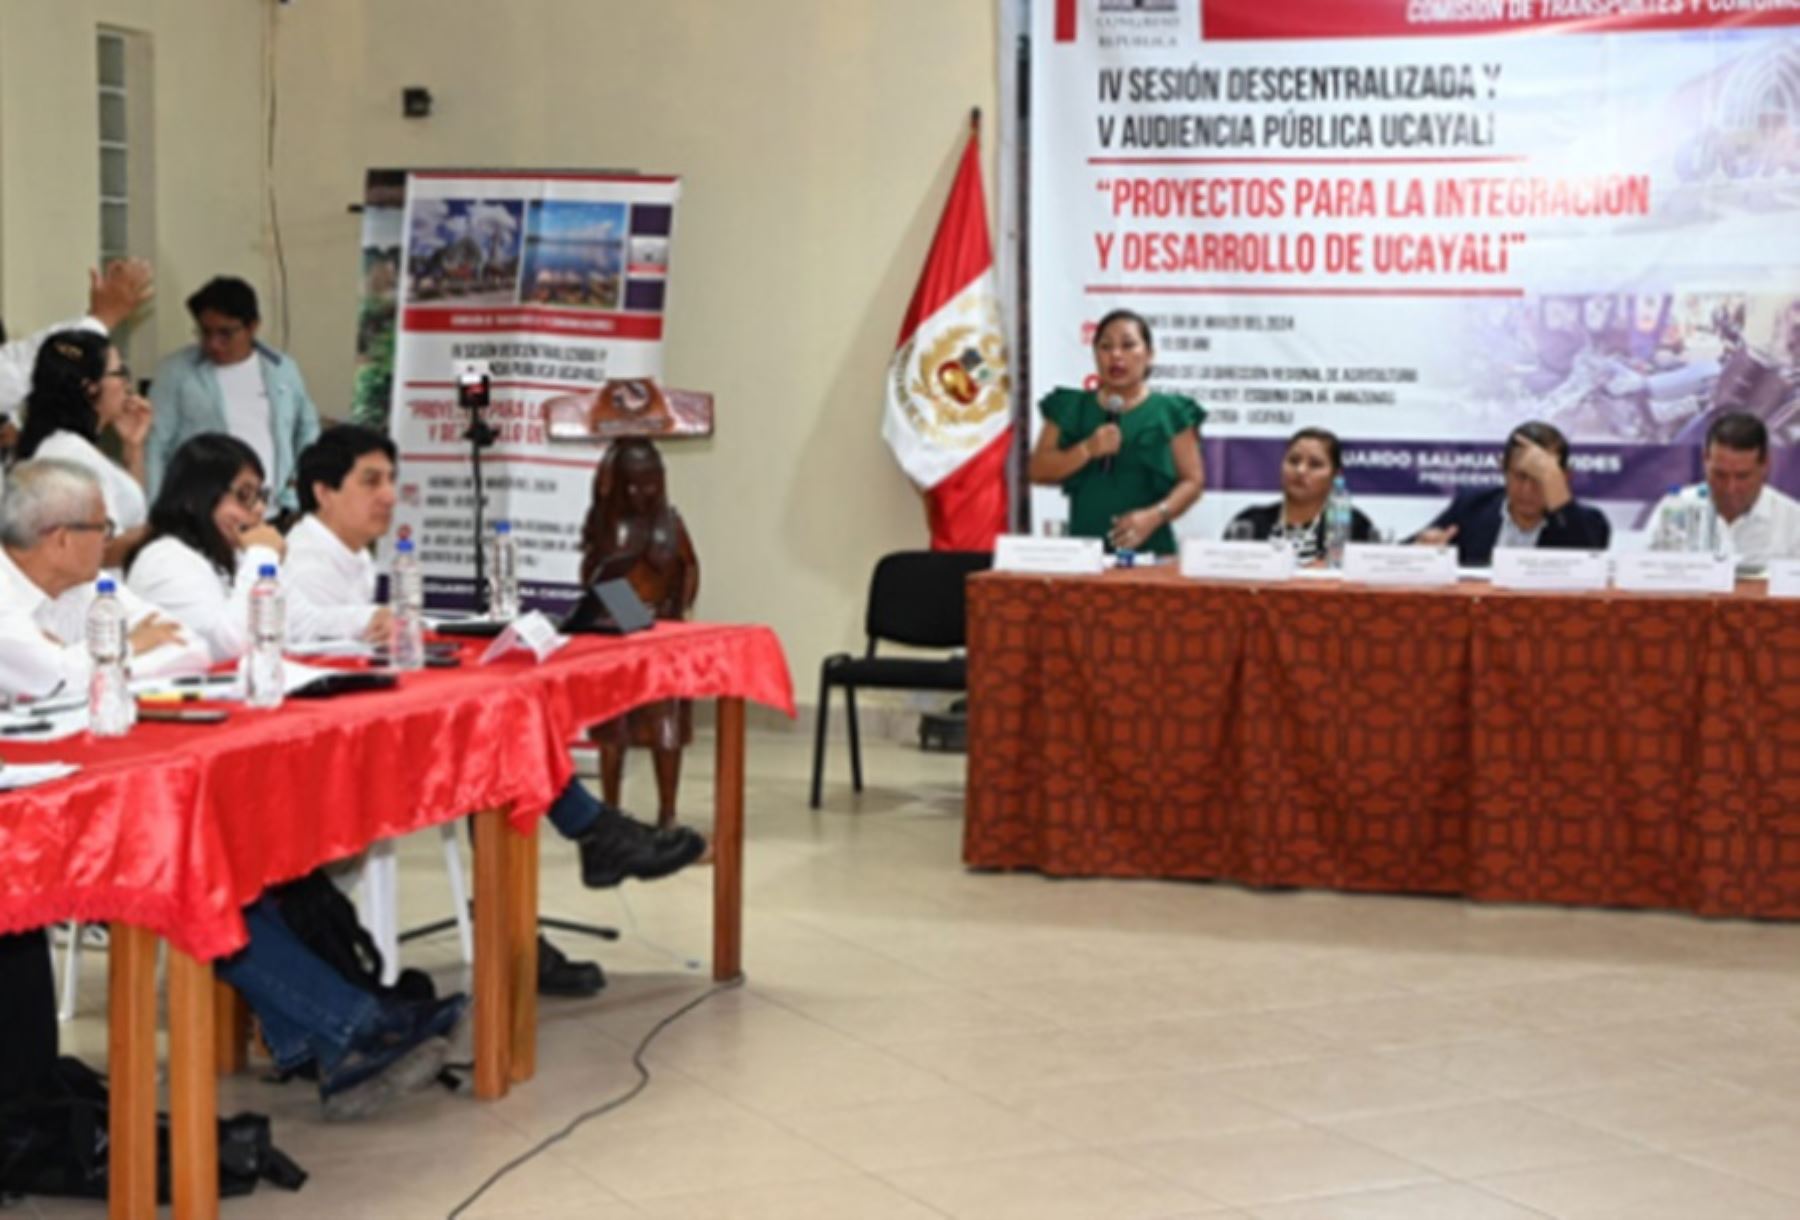 Los viceministros de Transportes y de Comunicaciones, Ismael Sutta Soto y Carla Sosa Vela, respectivamente, presentaron avances de las intervenciones del sector en la región Ucayali, durante la V Audiencia Pública Descentralizada “Proyectos para la integración y desarrollo de la región Ucayali”, realizada en la ciudad de Pucallpa.